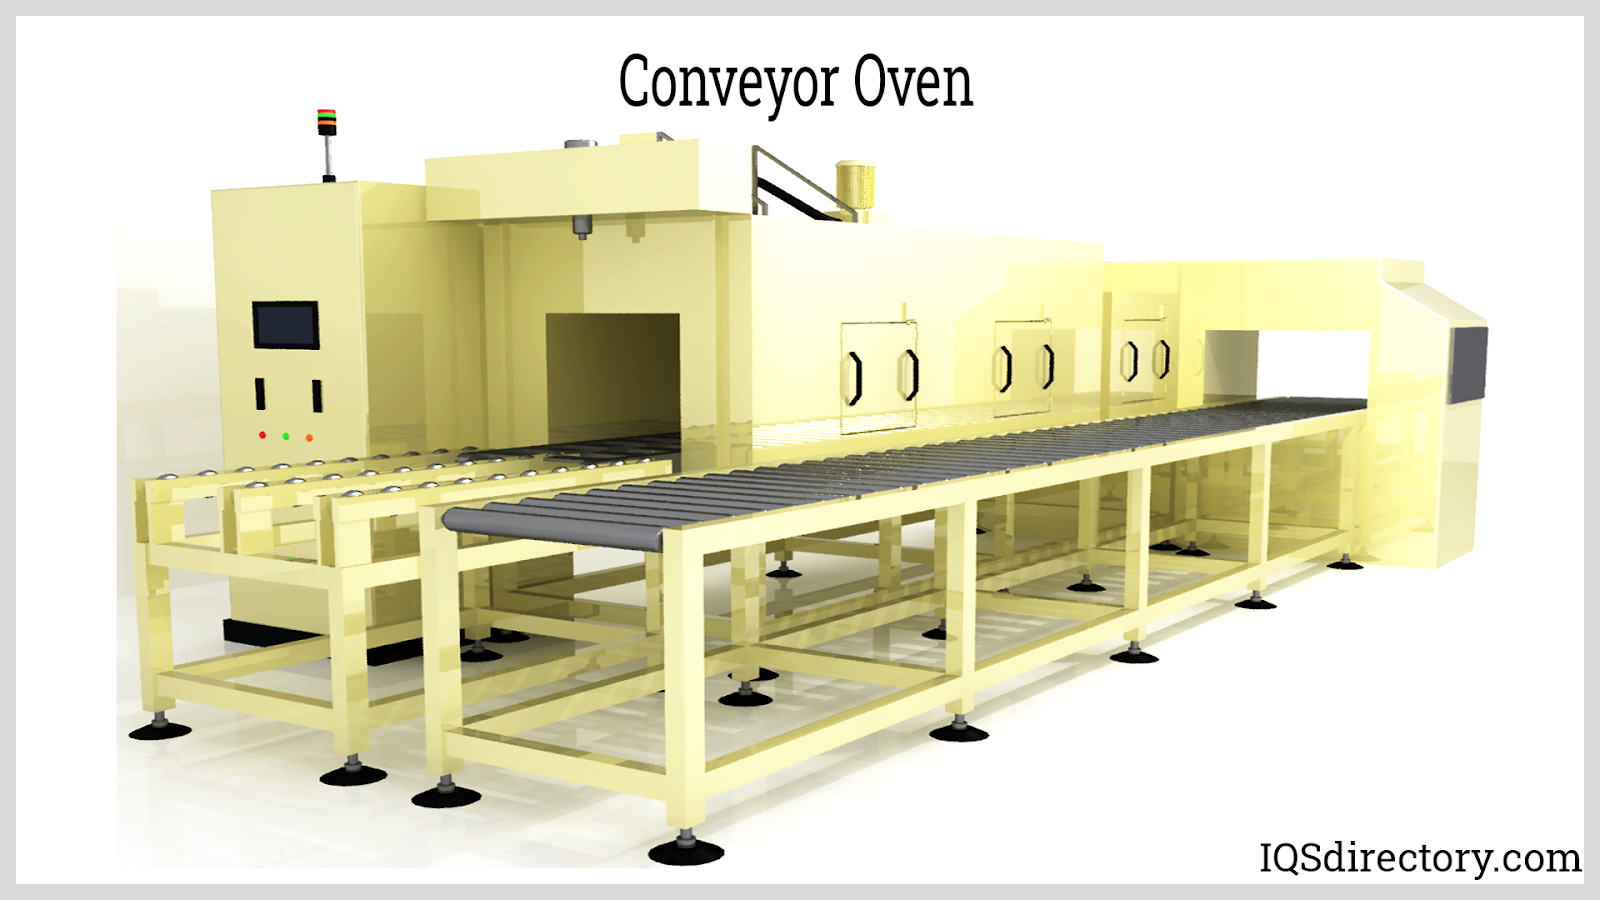 https://www.iqsdirectory.com/articles/industrial-oven/conveyor-ovens/conveyor-oven-1.png